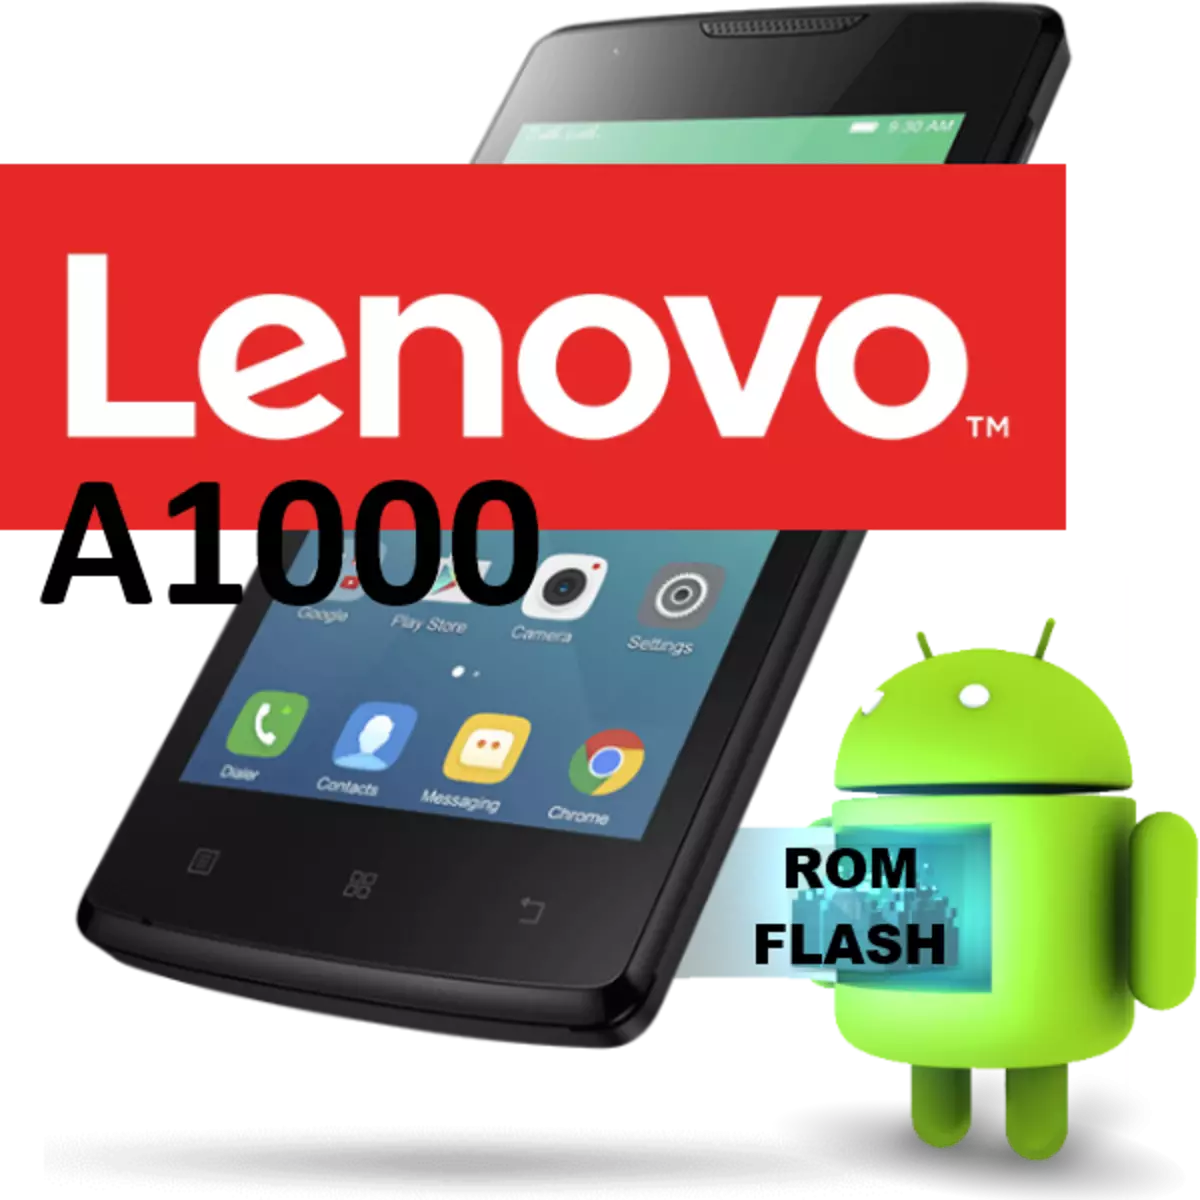 Firmware Lenovo A1000.